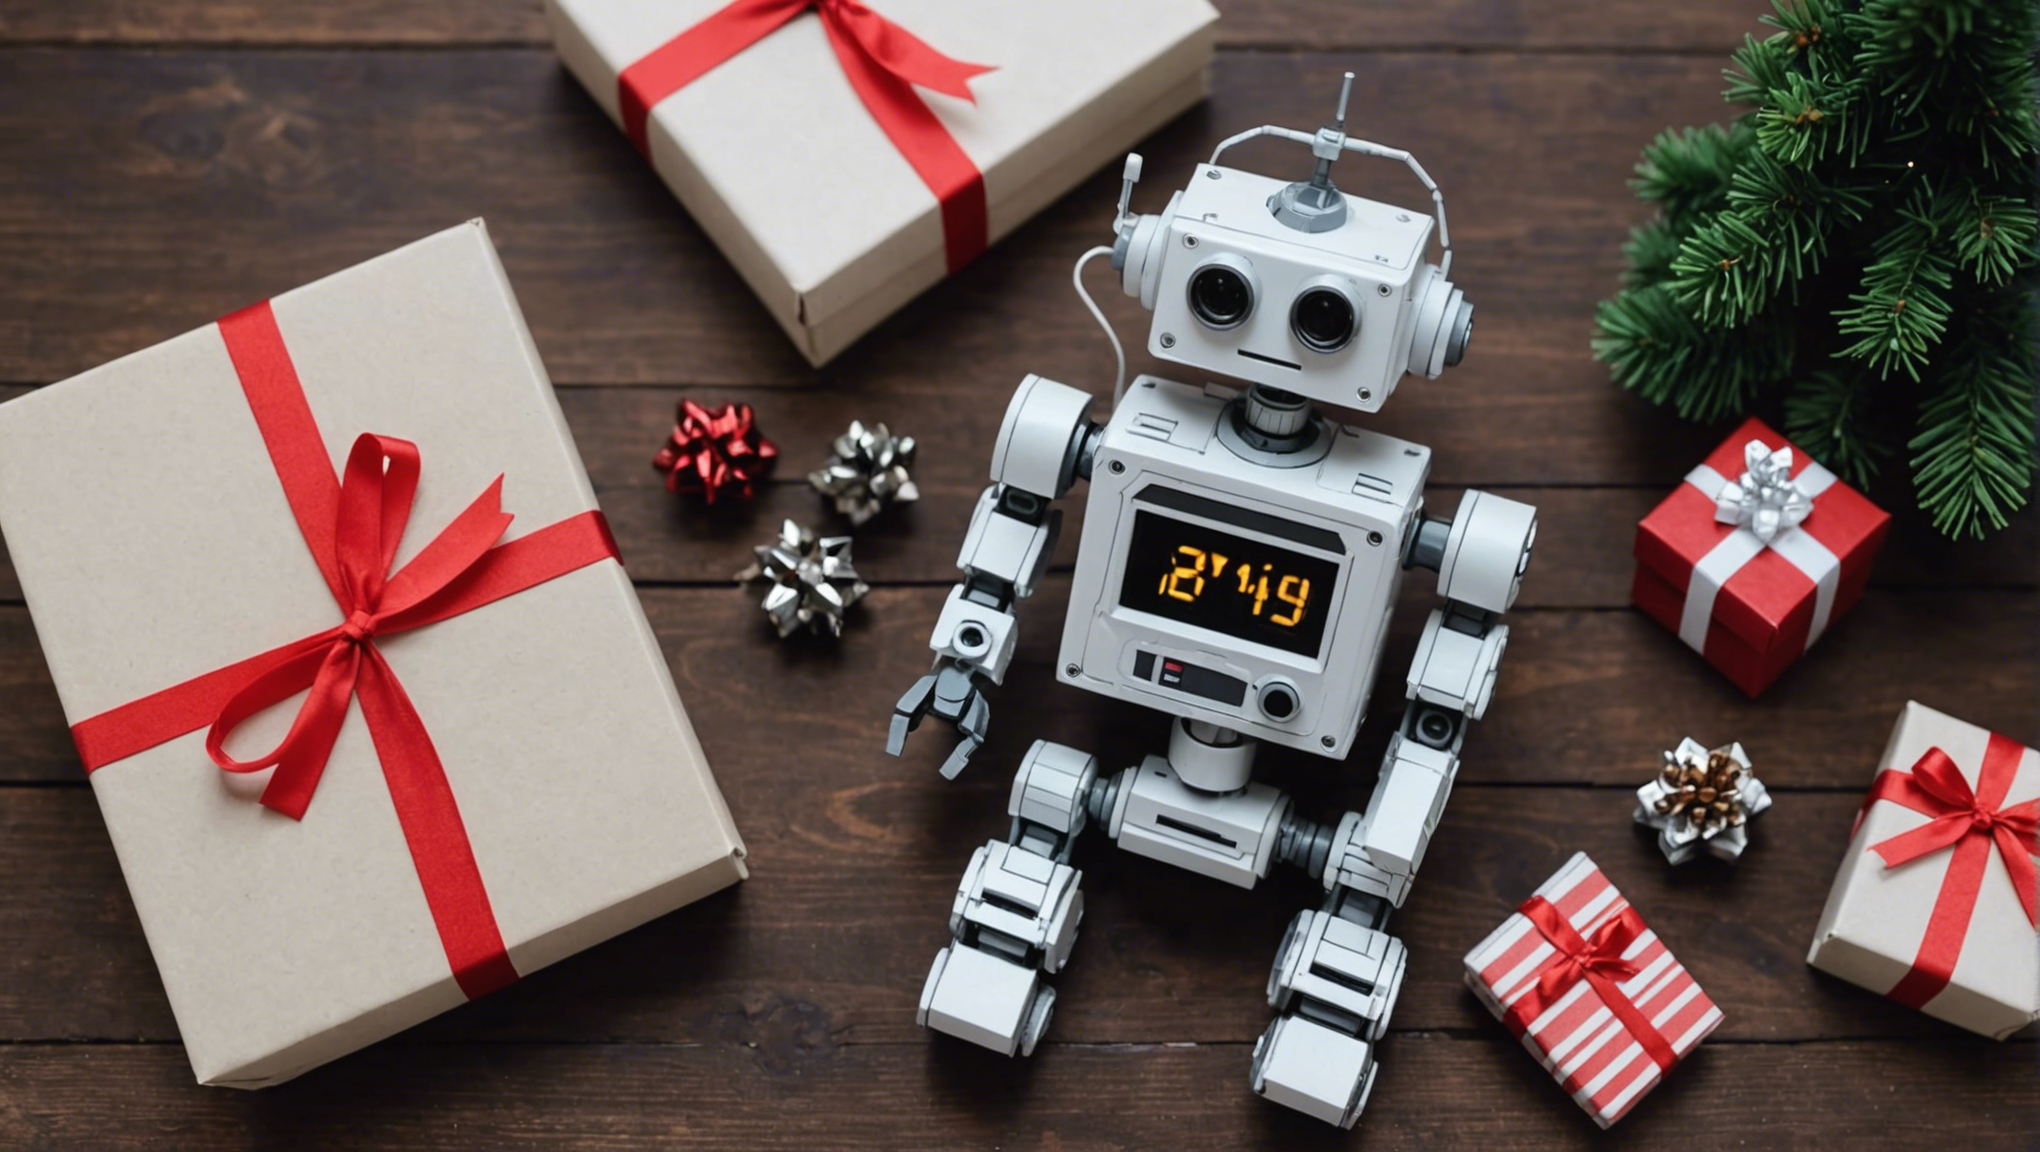 découvrez des idées de cadeaux diy en robotique pour noël 2021 et offrez des créations uniques et originales à vos proches passionnés de technologie et de bricolage.